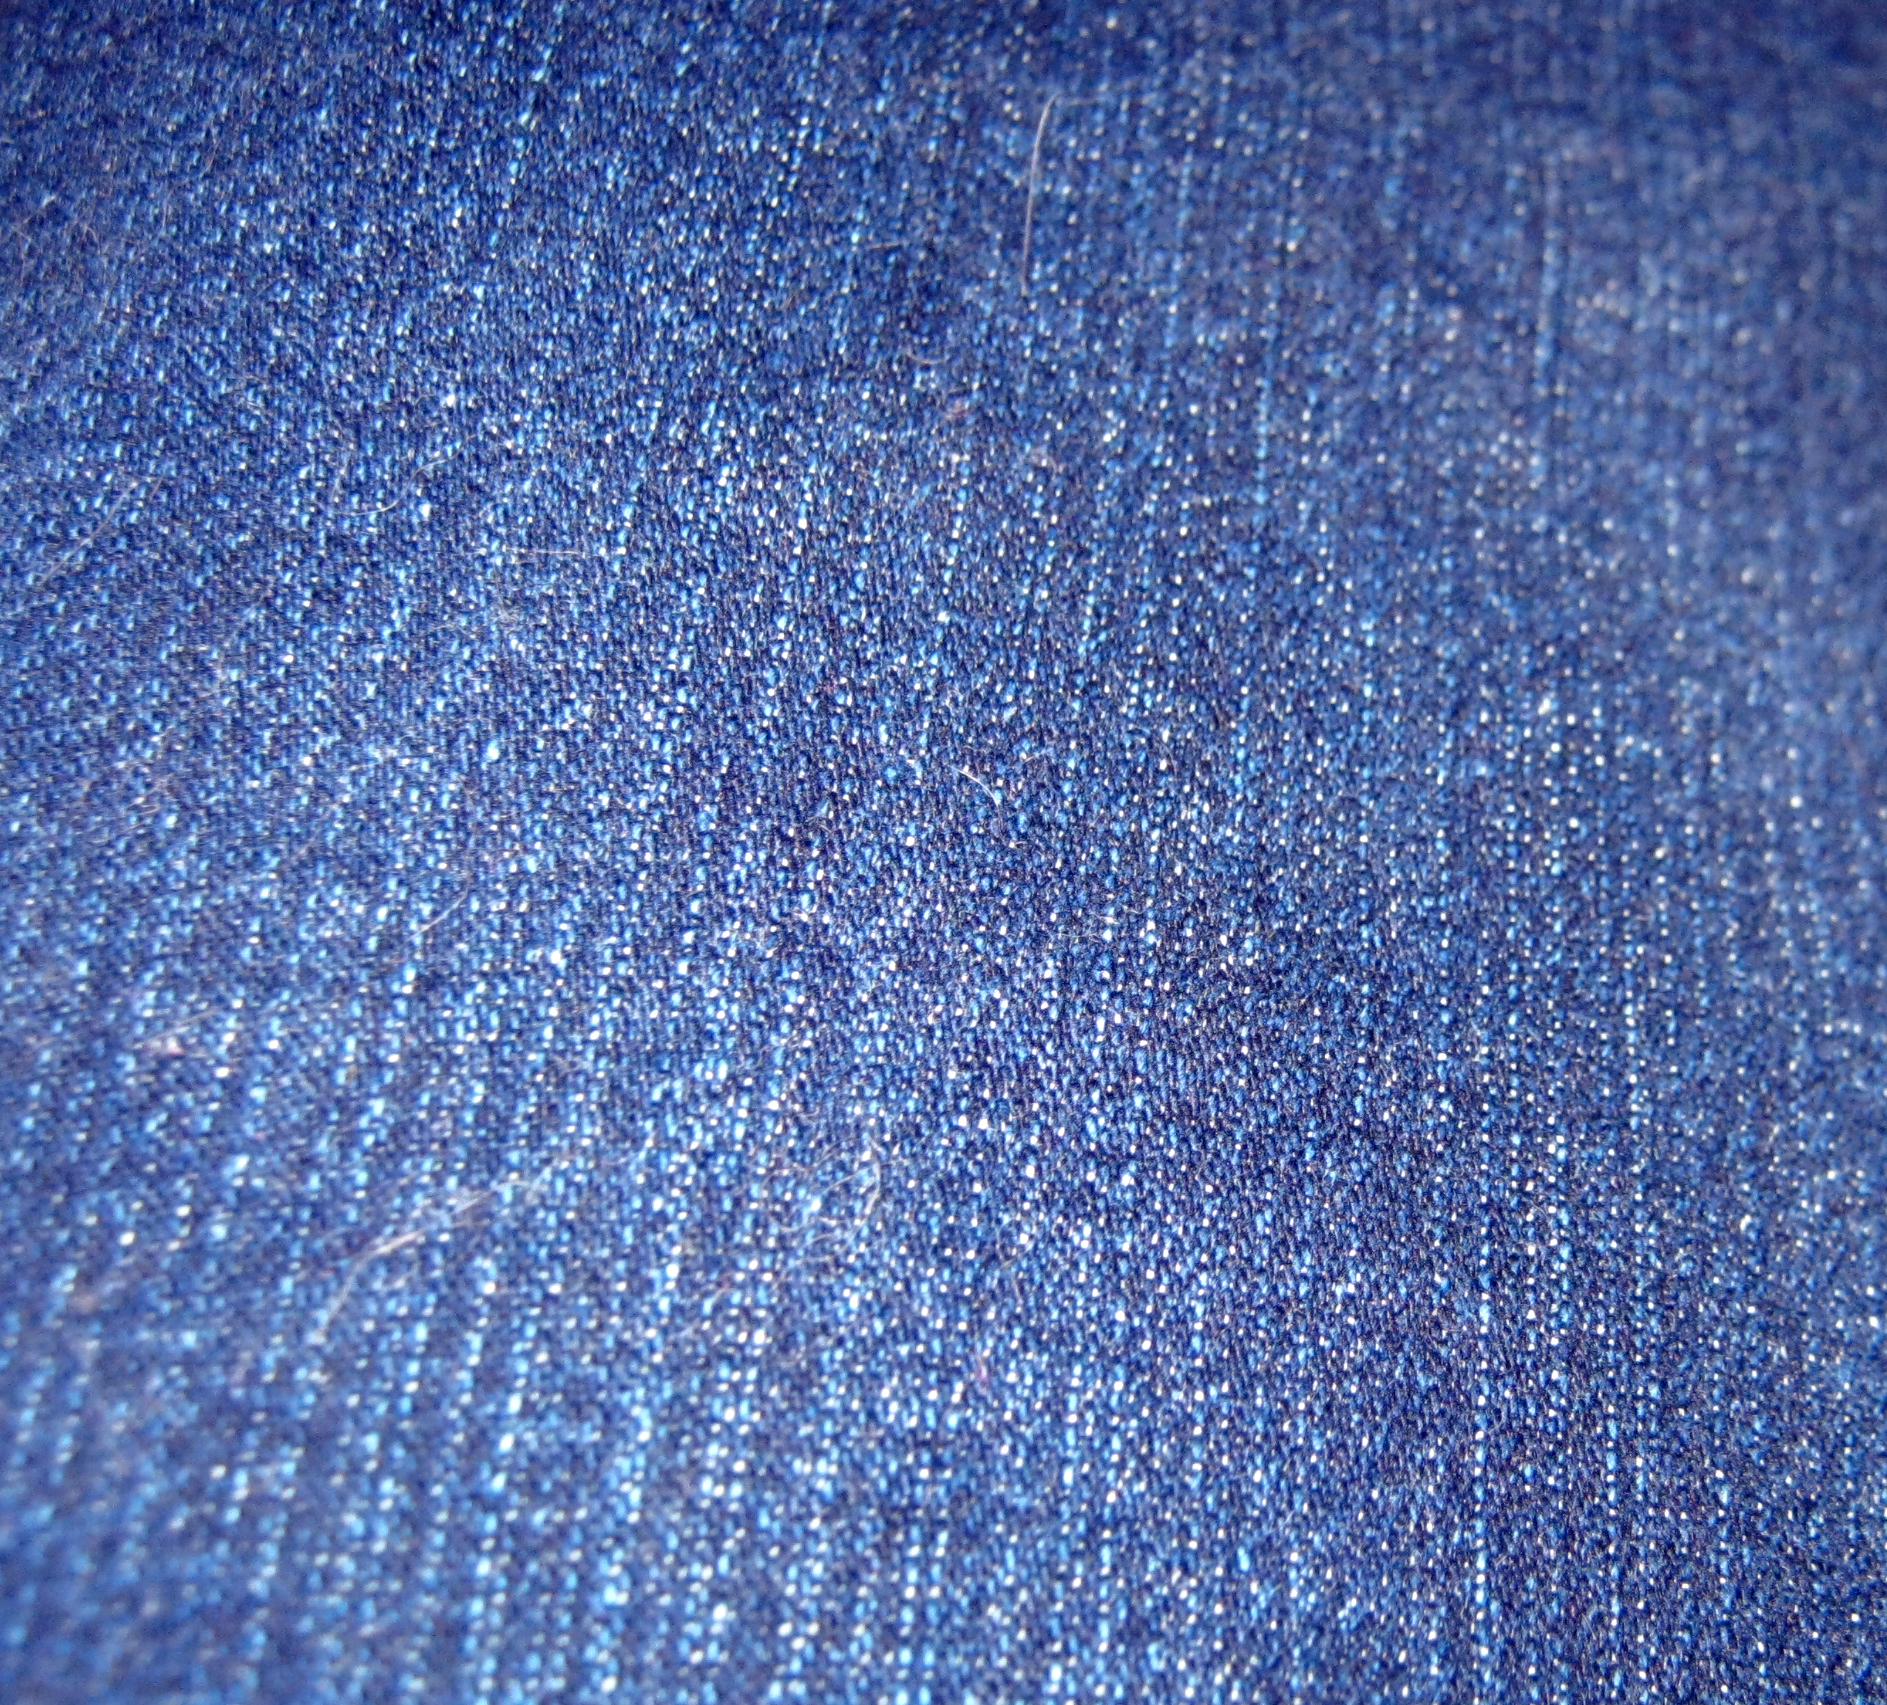 Текстура джинсовой ткани, скачать фото, фон, джинсы, джинса, blue jeans texture, background